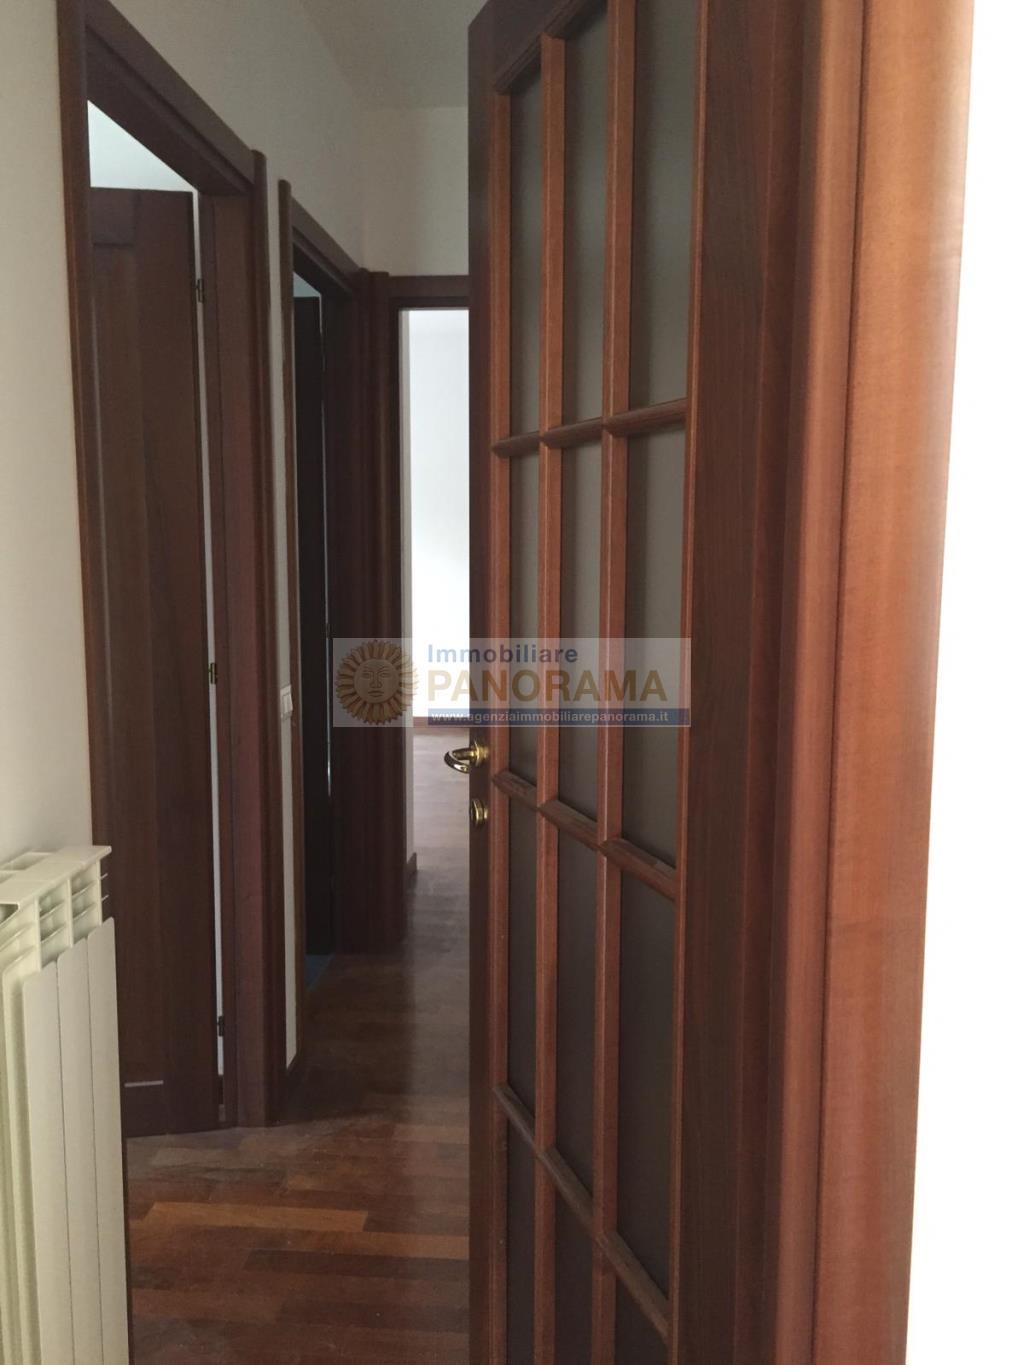 Rif. CVE46 Appartamento in vendita a Porto d'Ascoli